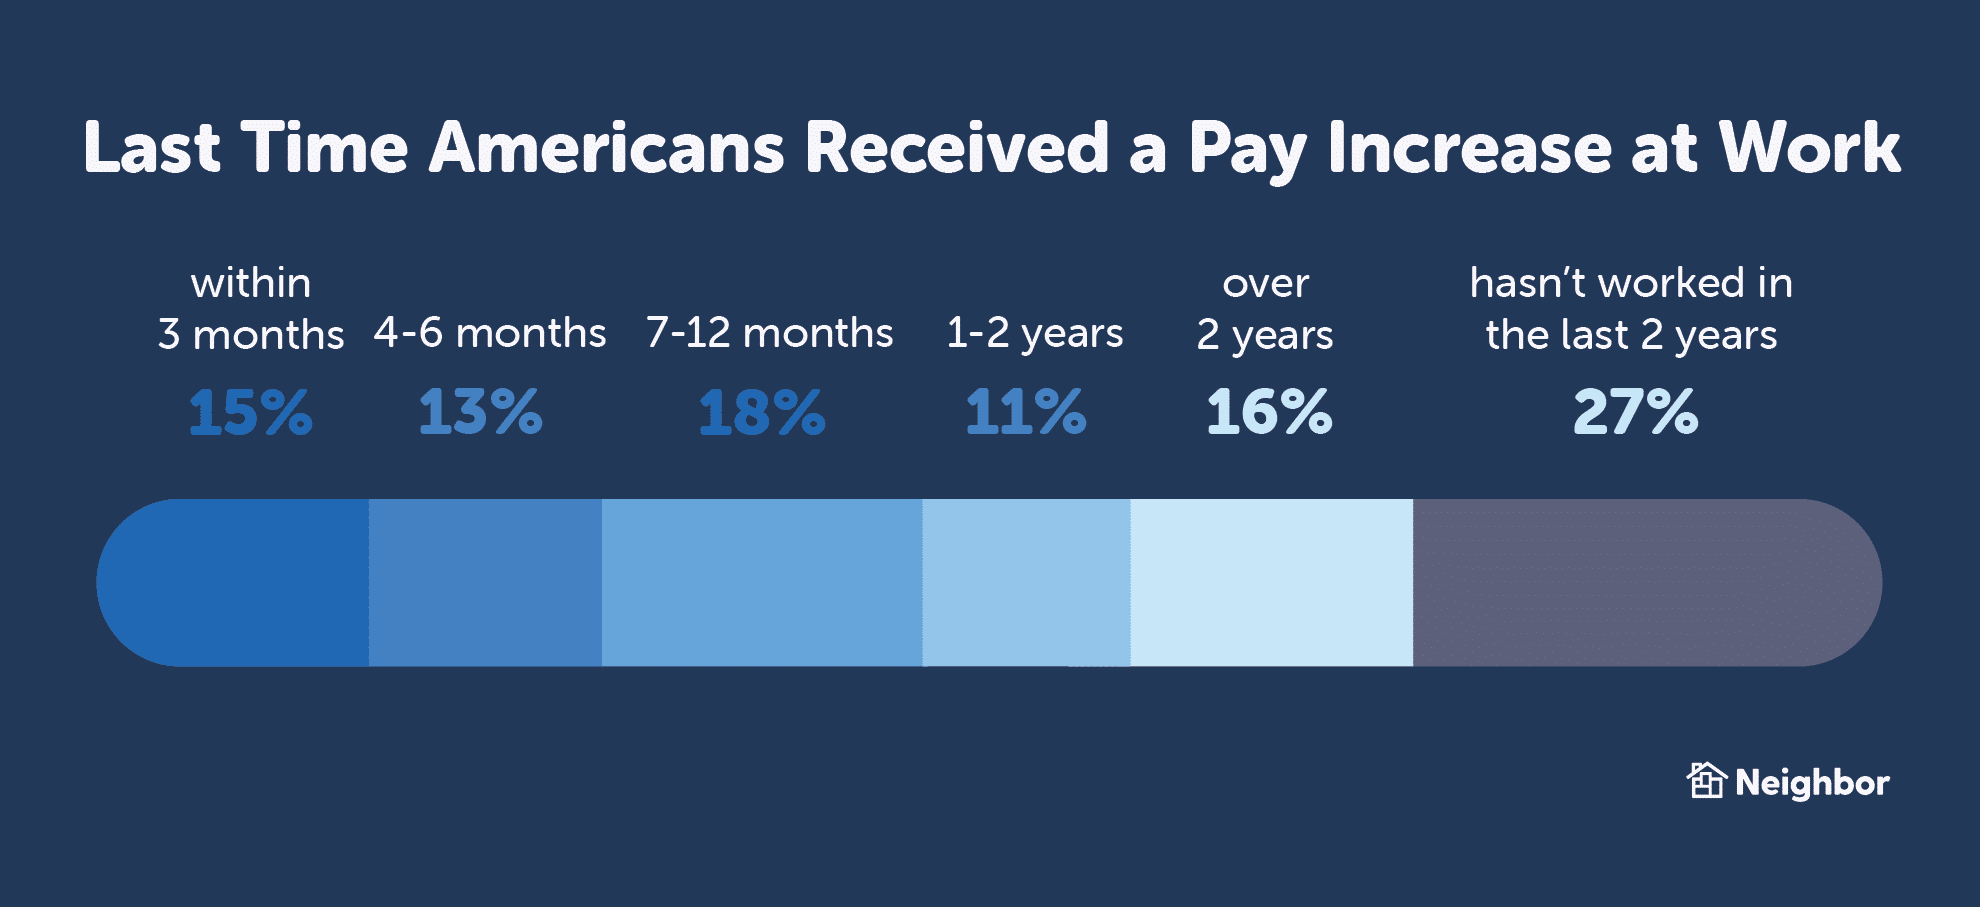 La dernière fois que les Américains ont reçu une augmentation de salaire au travail